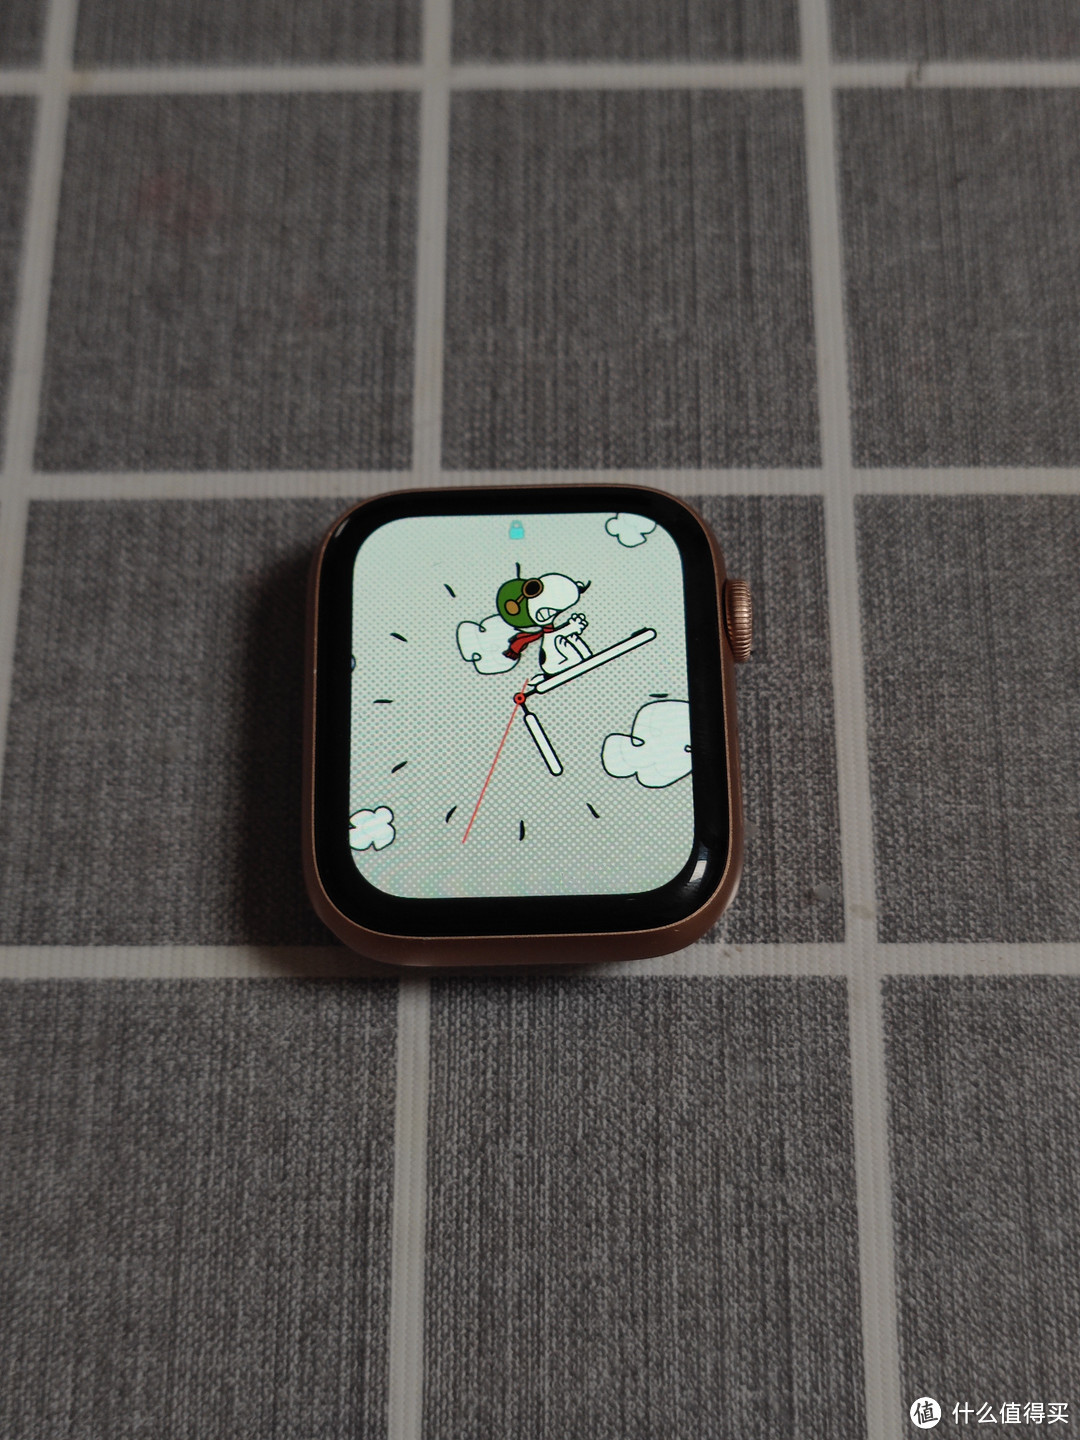 有缺点也有优点的Apple Watch是一台值得购买的智能手表。